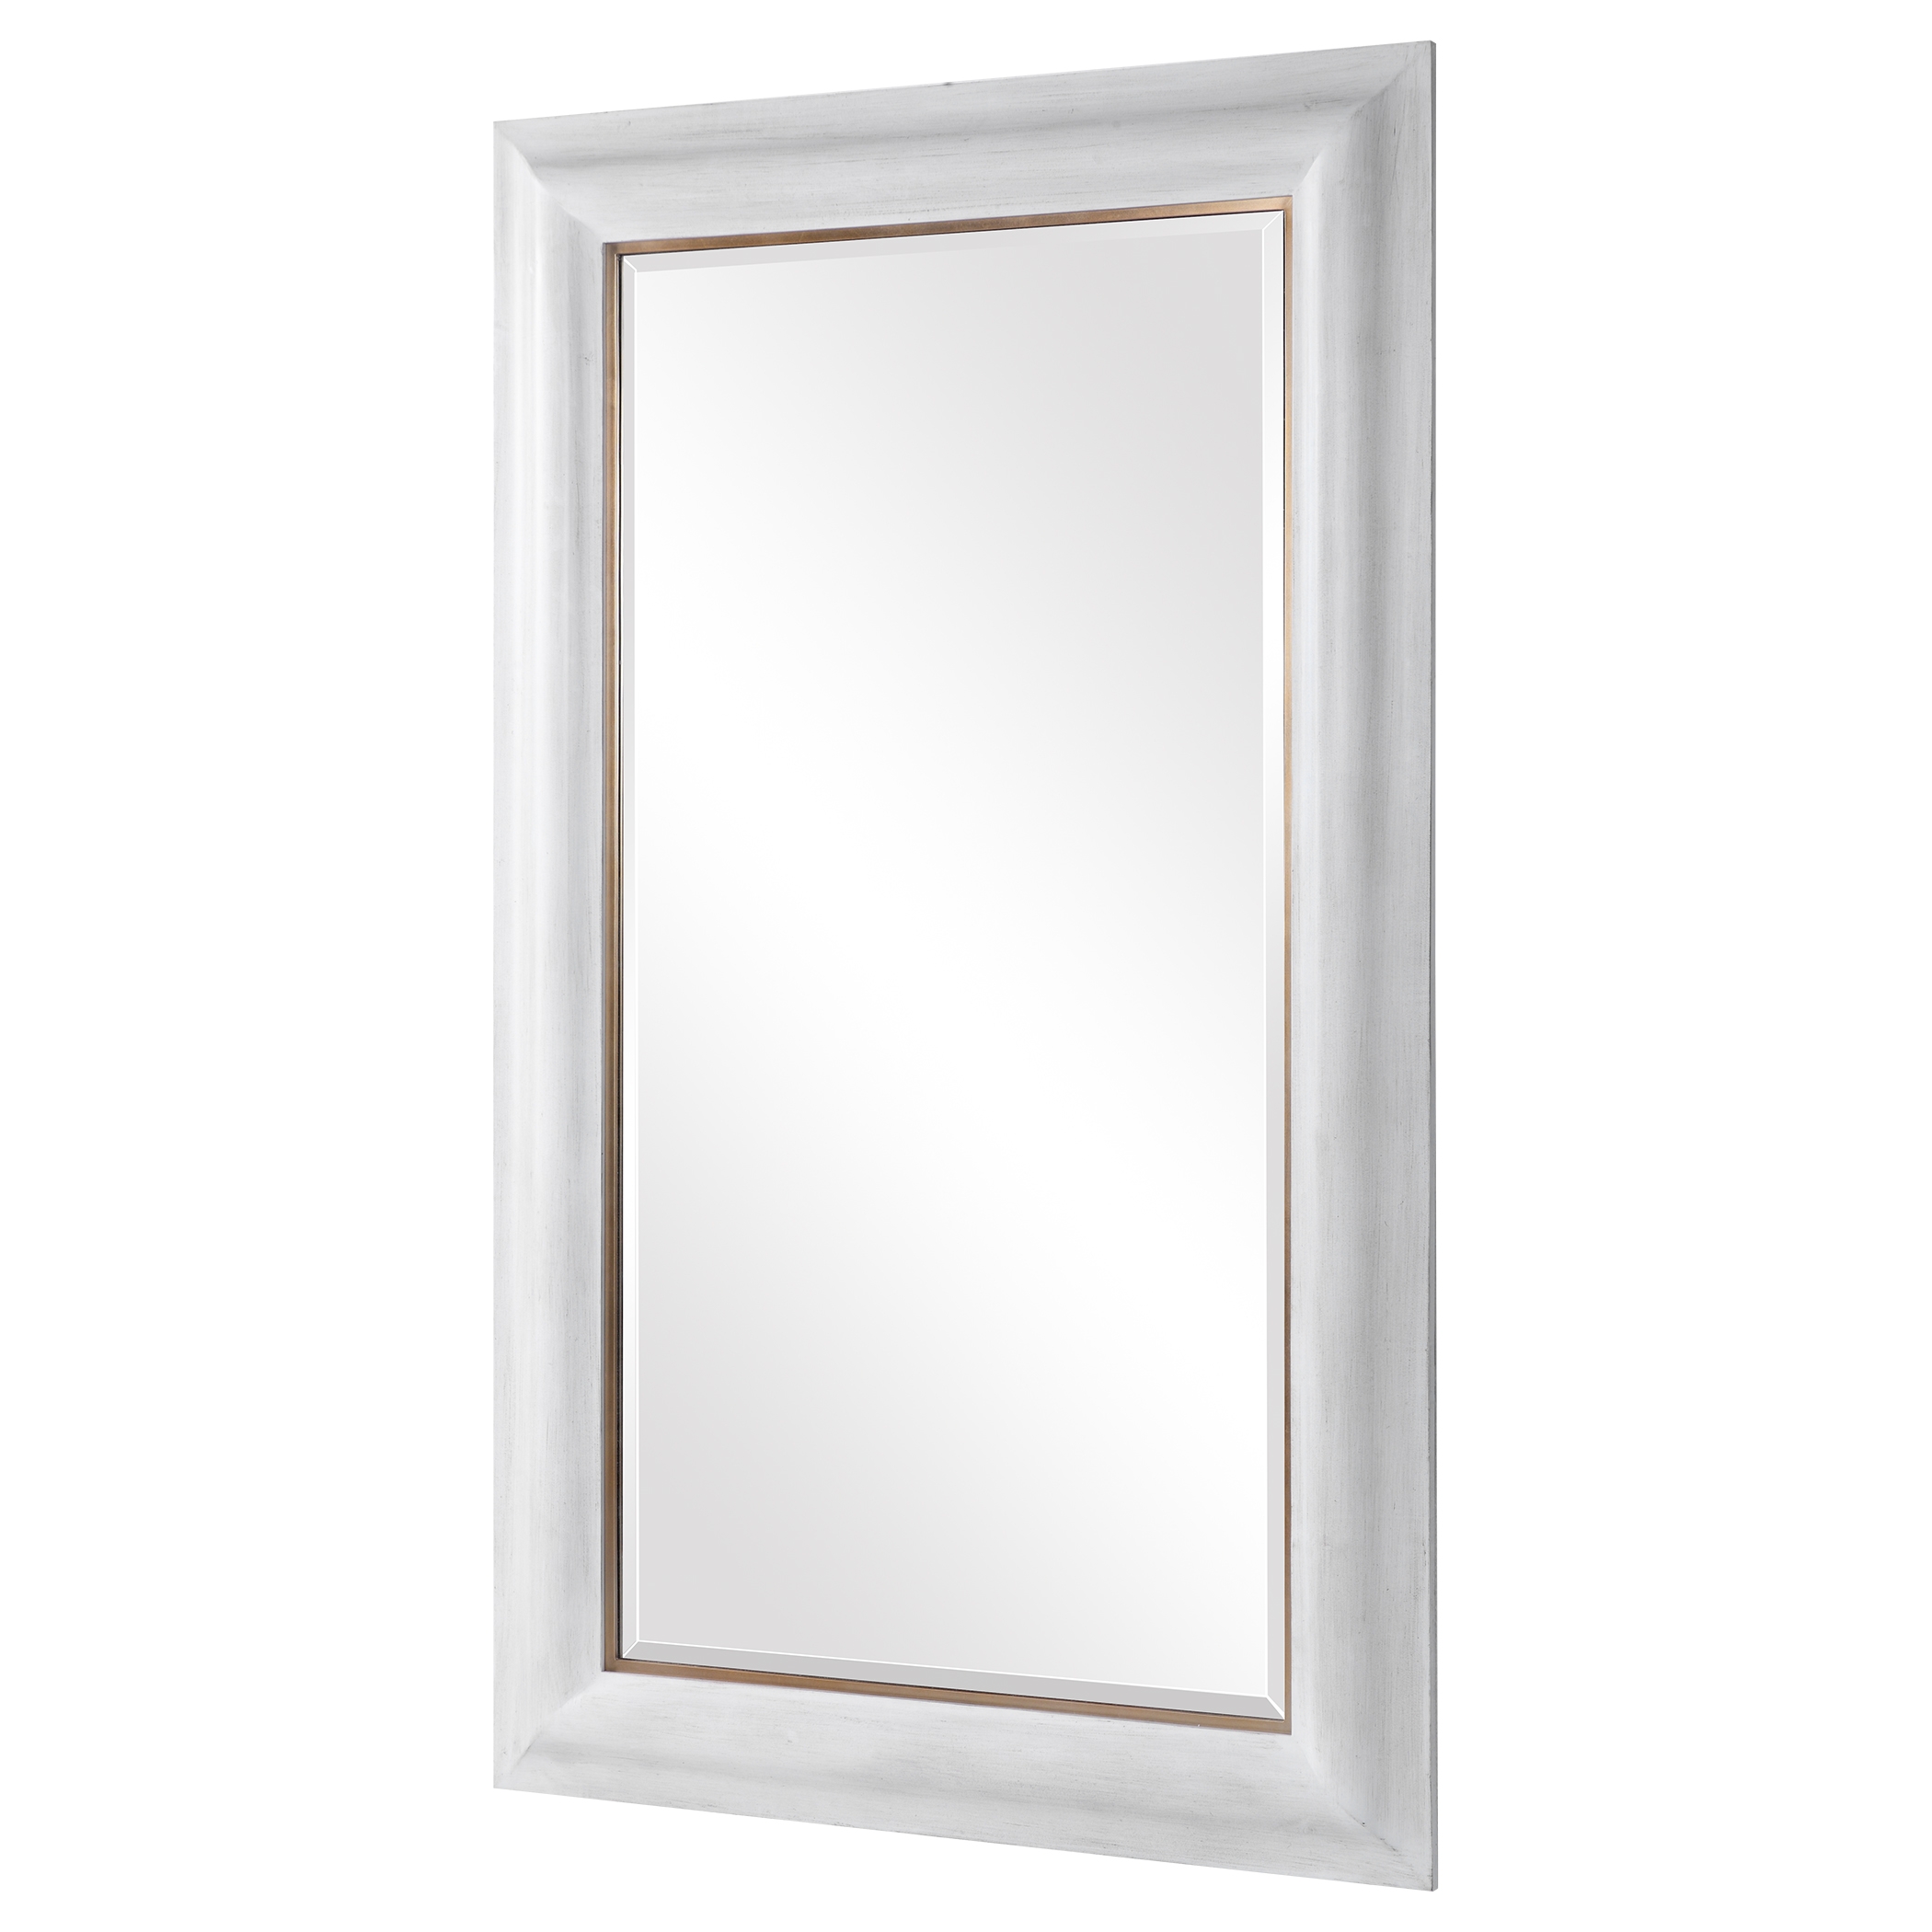 Piper Mirror, White, 30" x 60" - Image 3